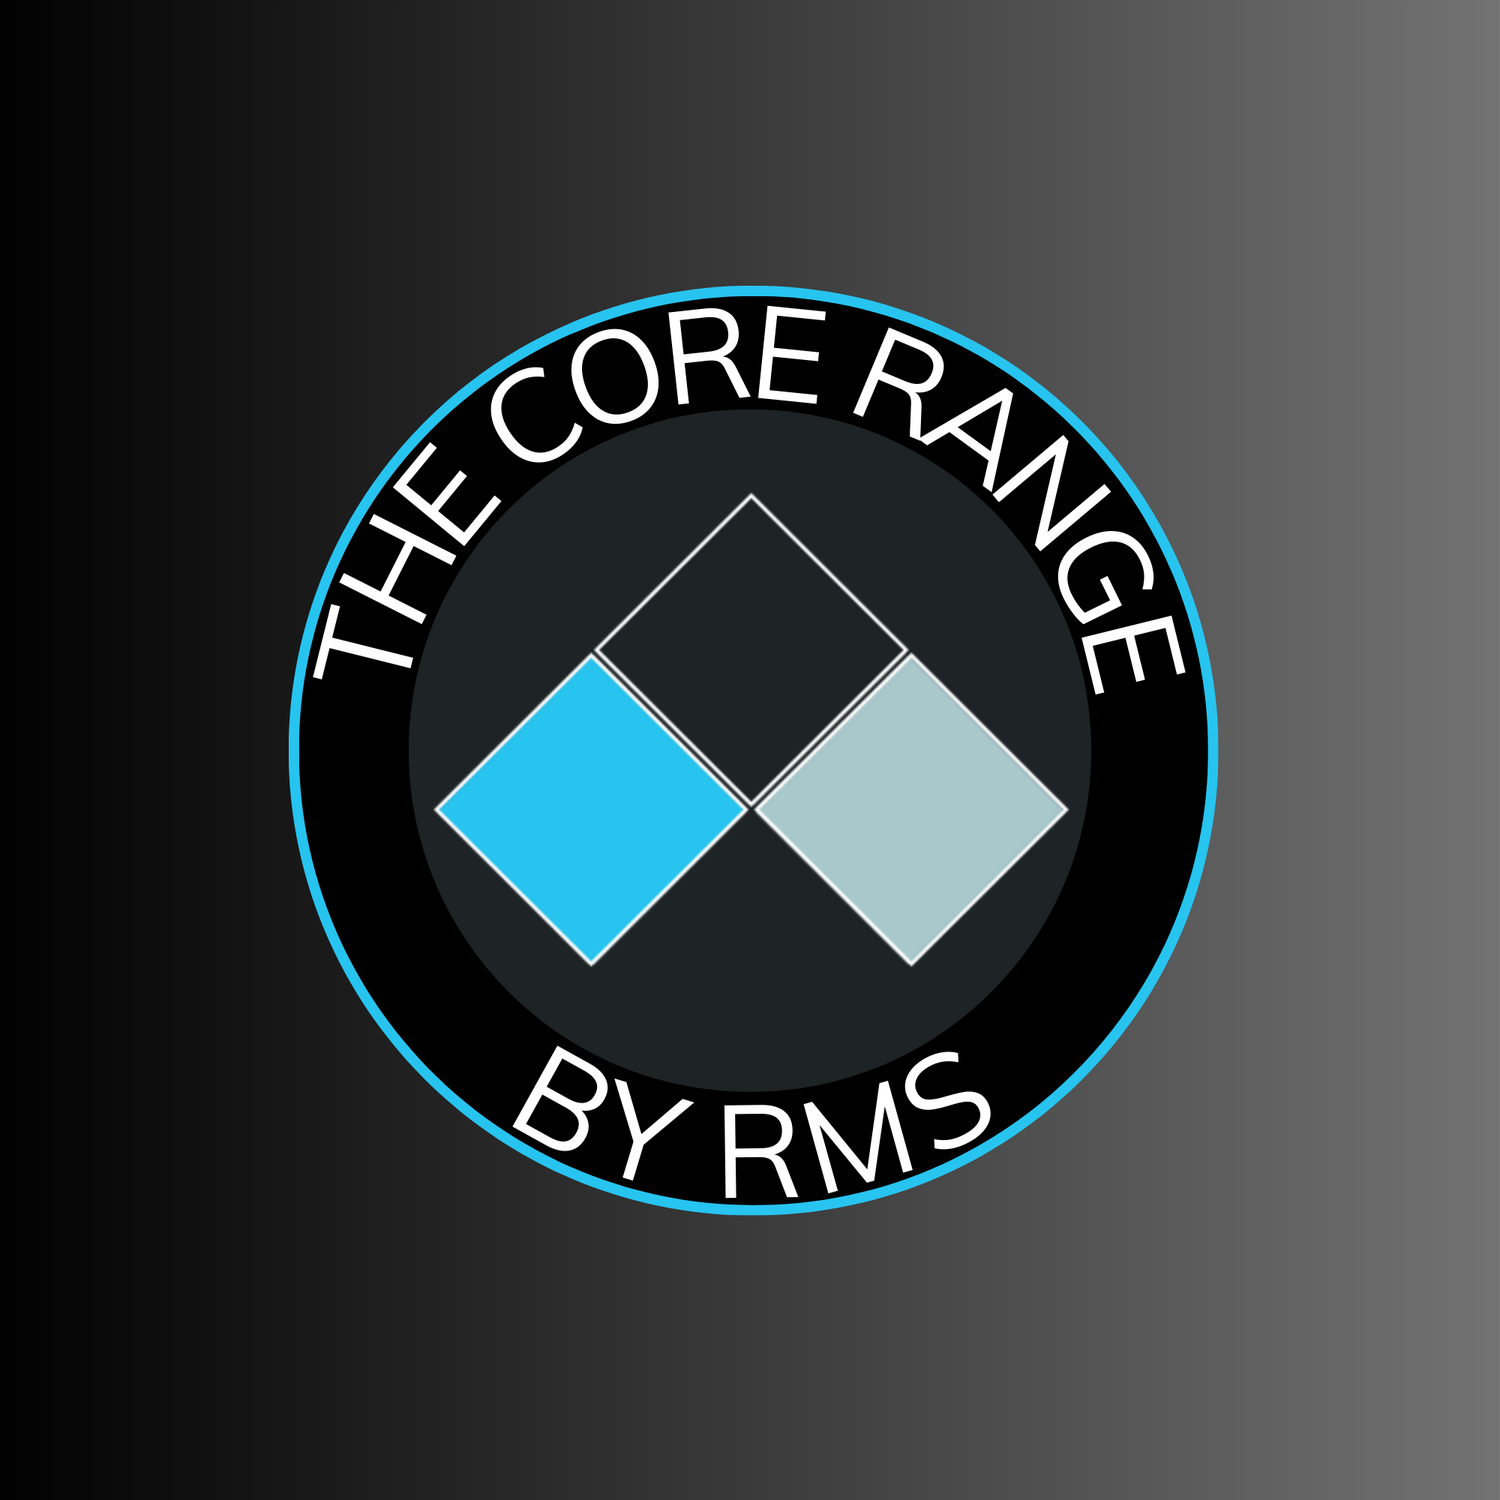 The Core Range